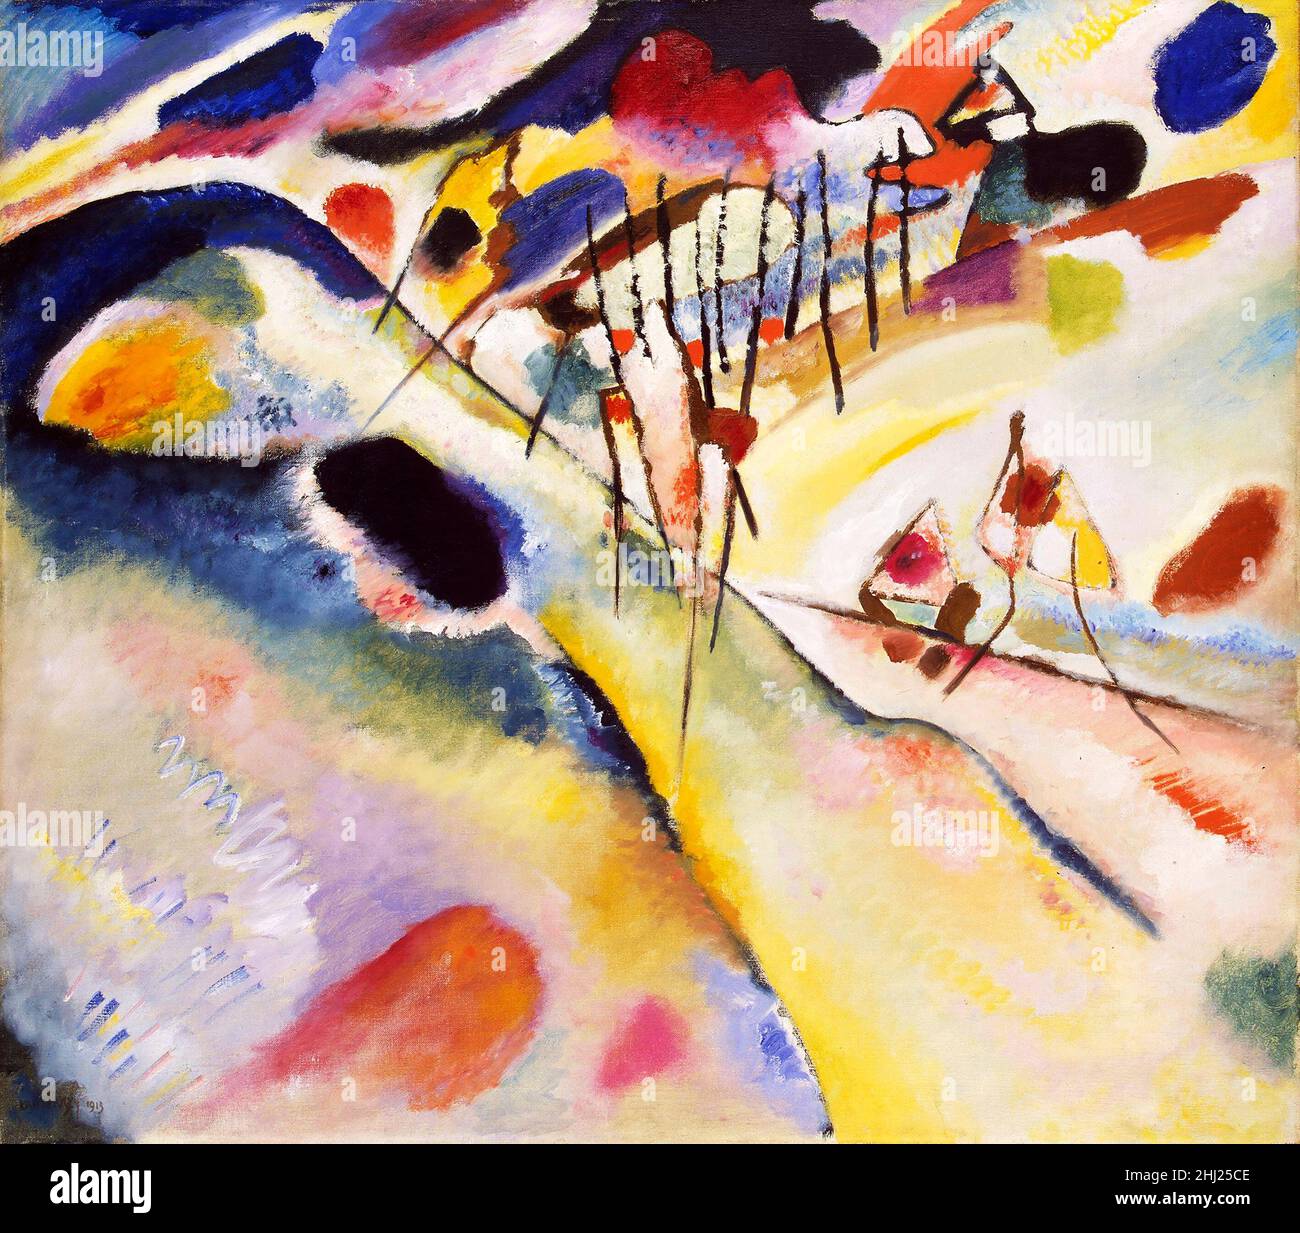 'Landscape' von Wassily Kandinsky (1866-1944), Öl auf Leinwand, 1913 Stockfoto